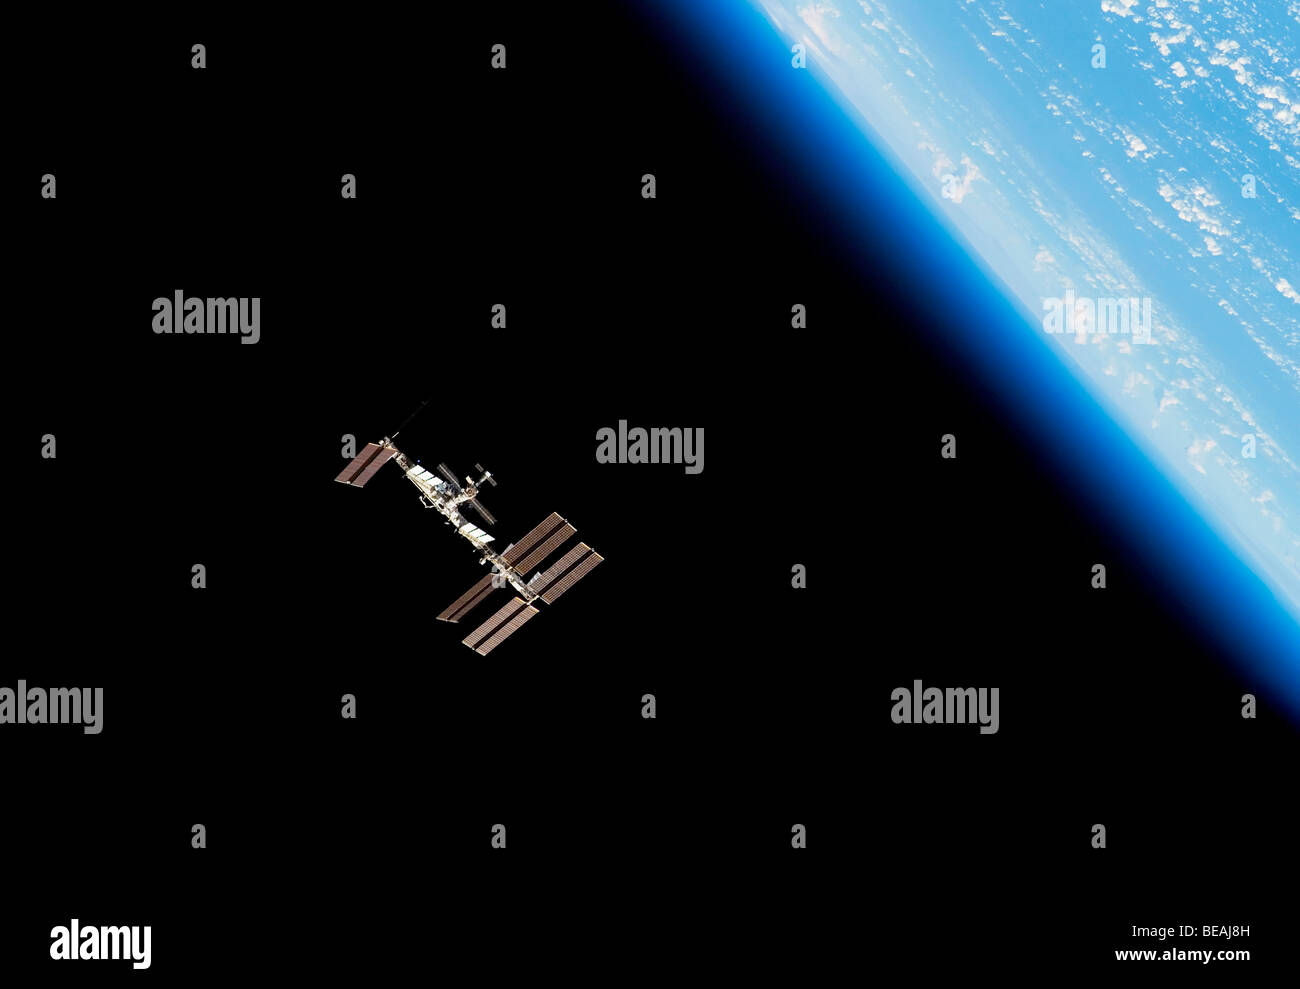 La ISS Stazione Spaziale Internazionale con la terra e atmosfera al di là. Versione ottimizzata di un originale immagine della NASA. Credit NASA Foto Stock